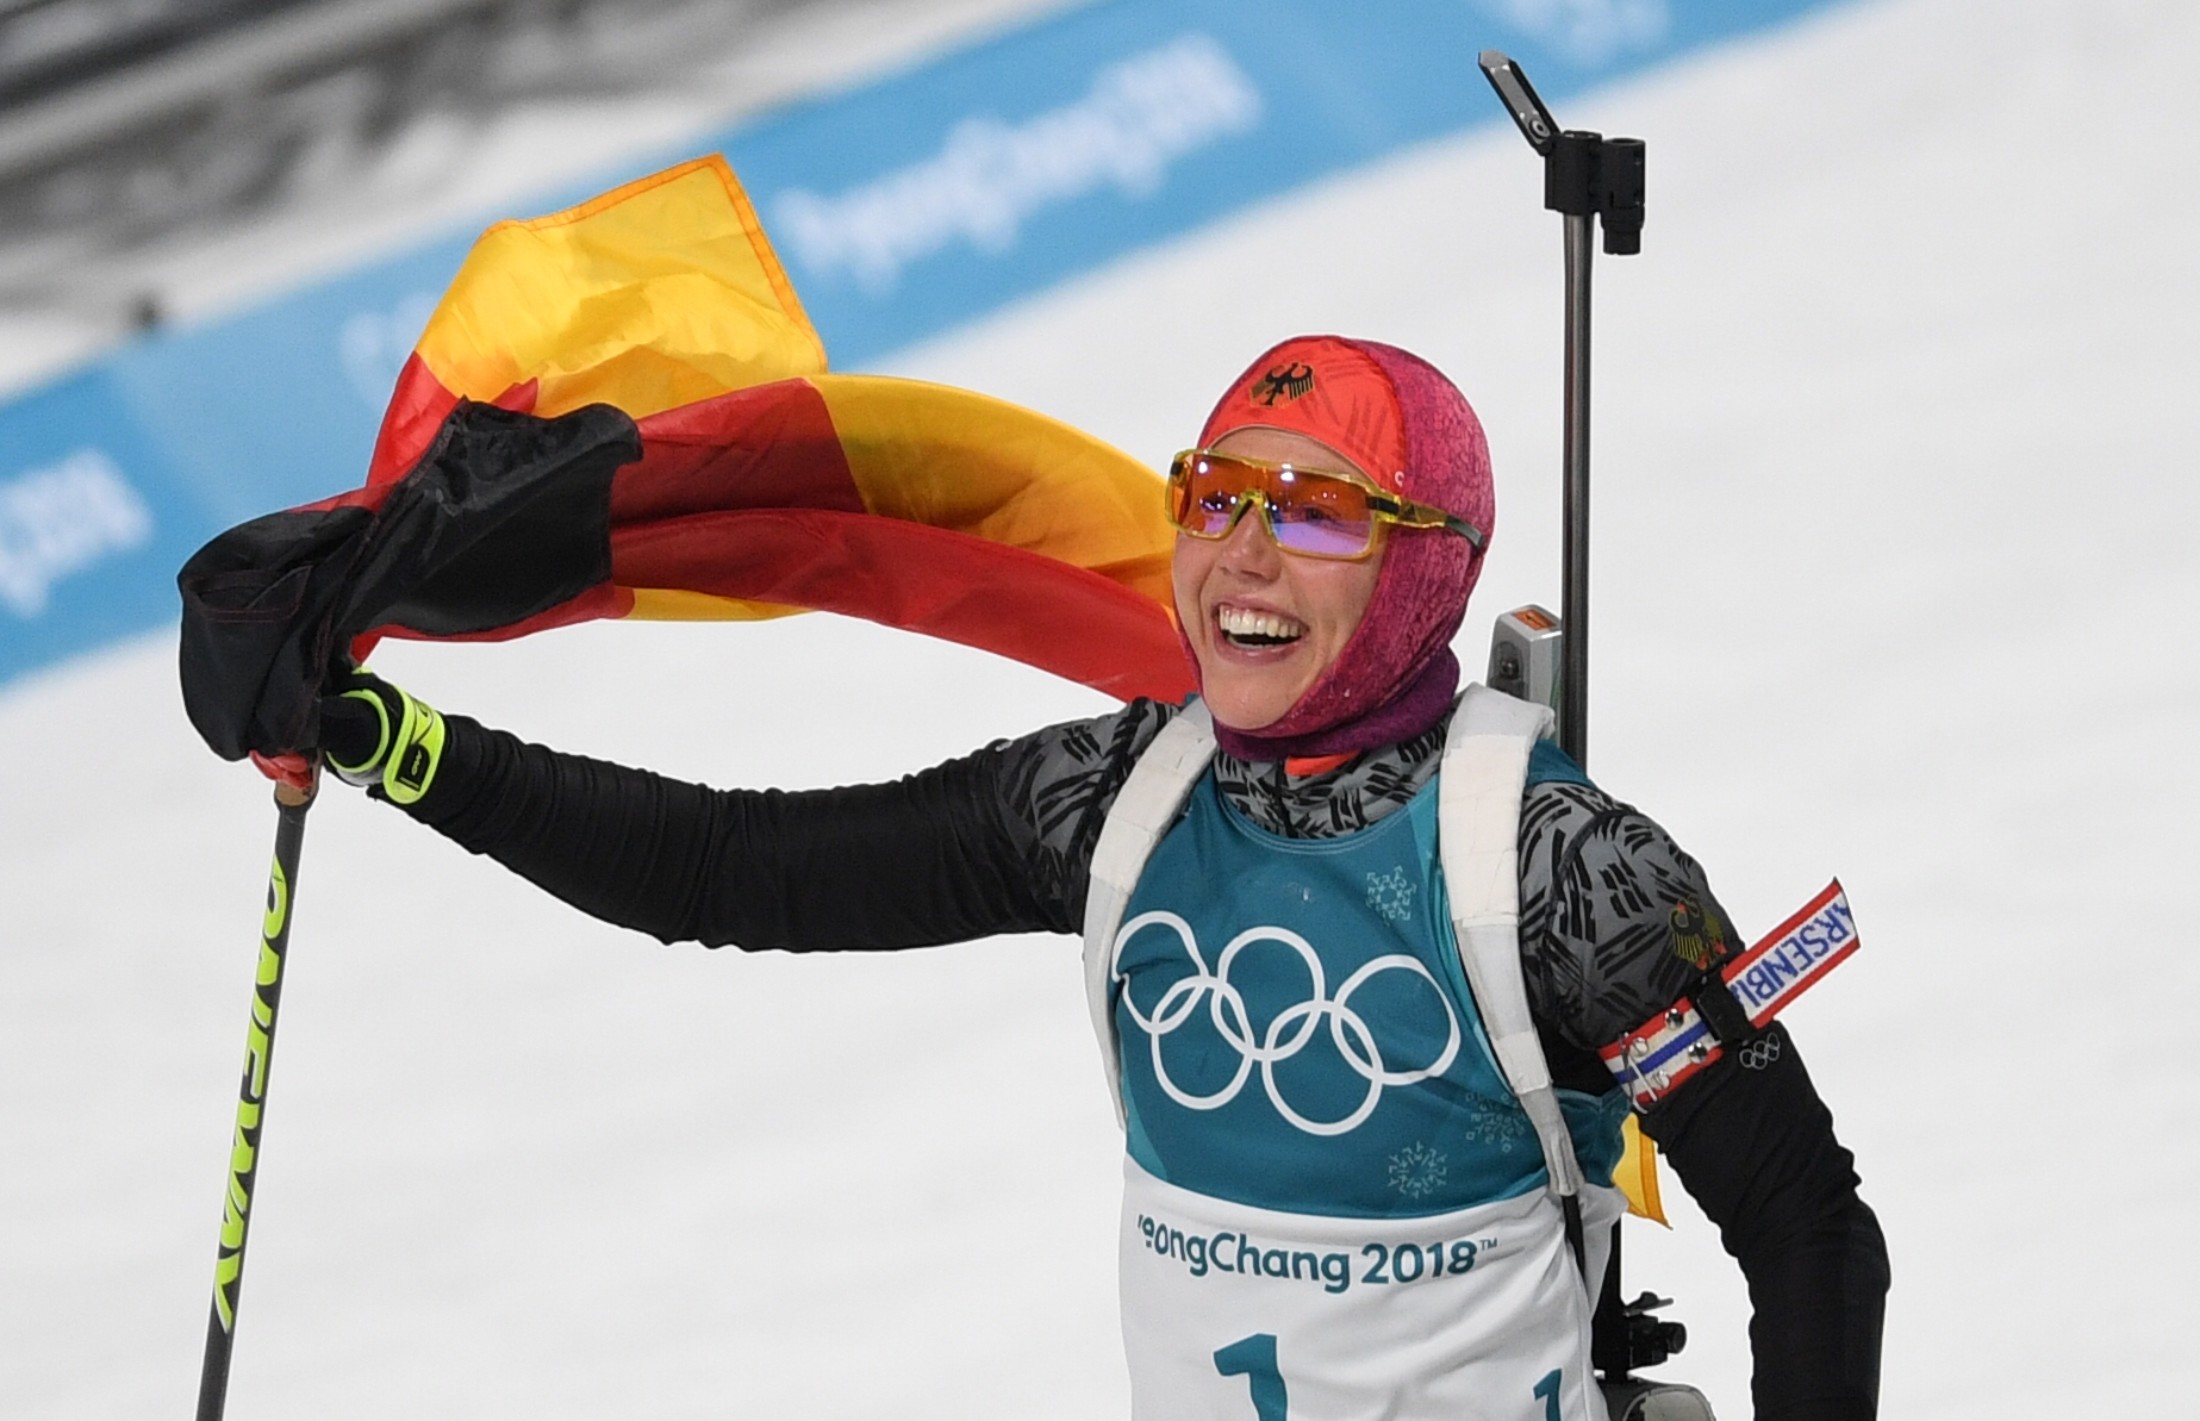 Немецкая биатлонистка Лаура Дальмайер взяла золото в пасьюте на 10 км. Фото: ©РИА Новости/Алексей Филиппов